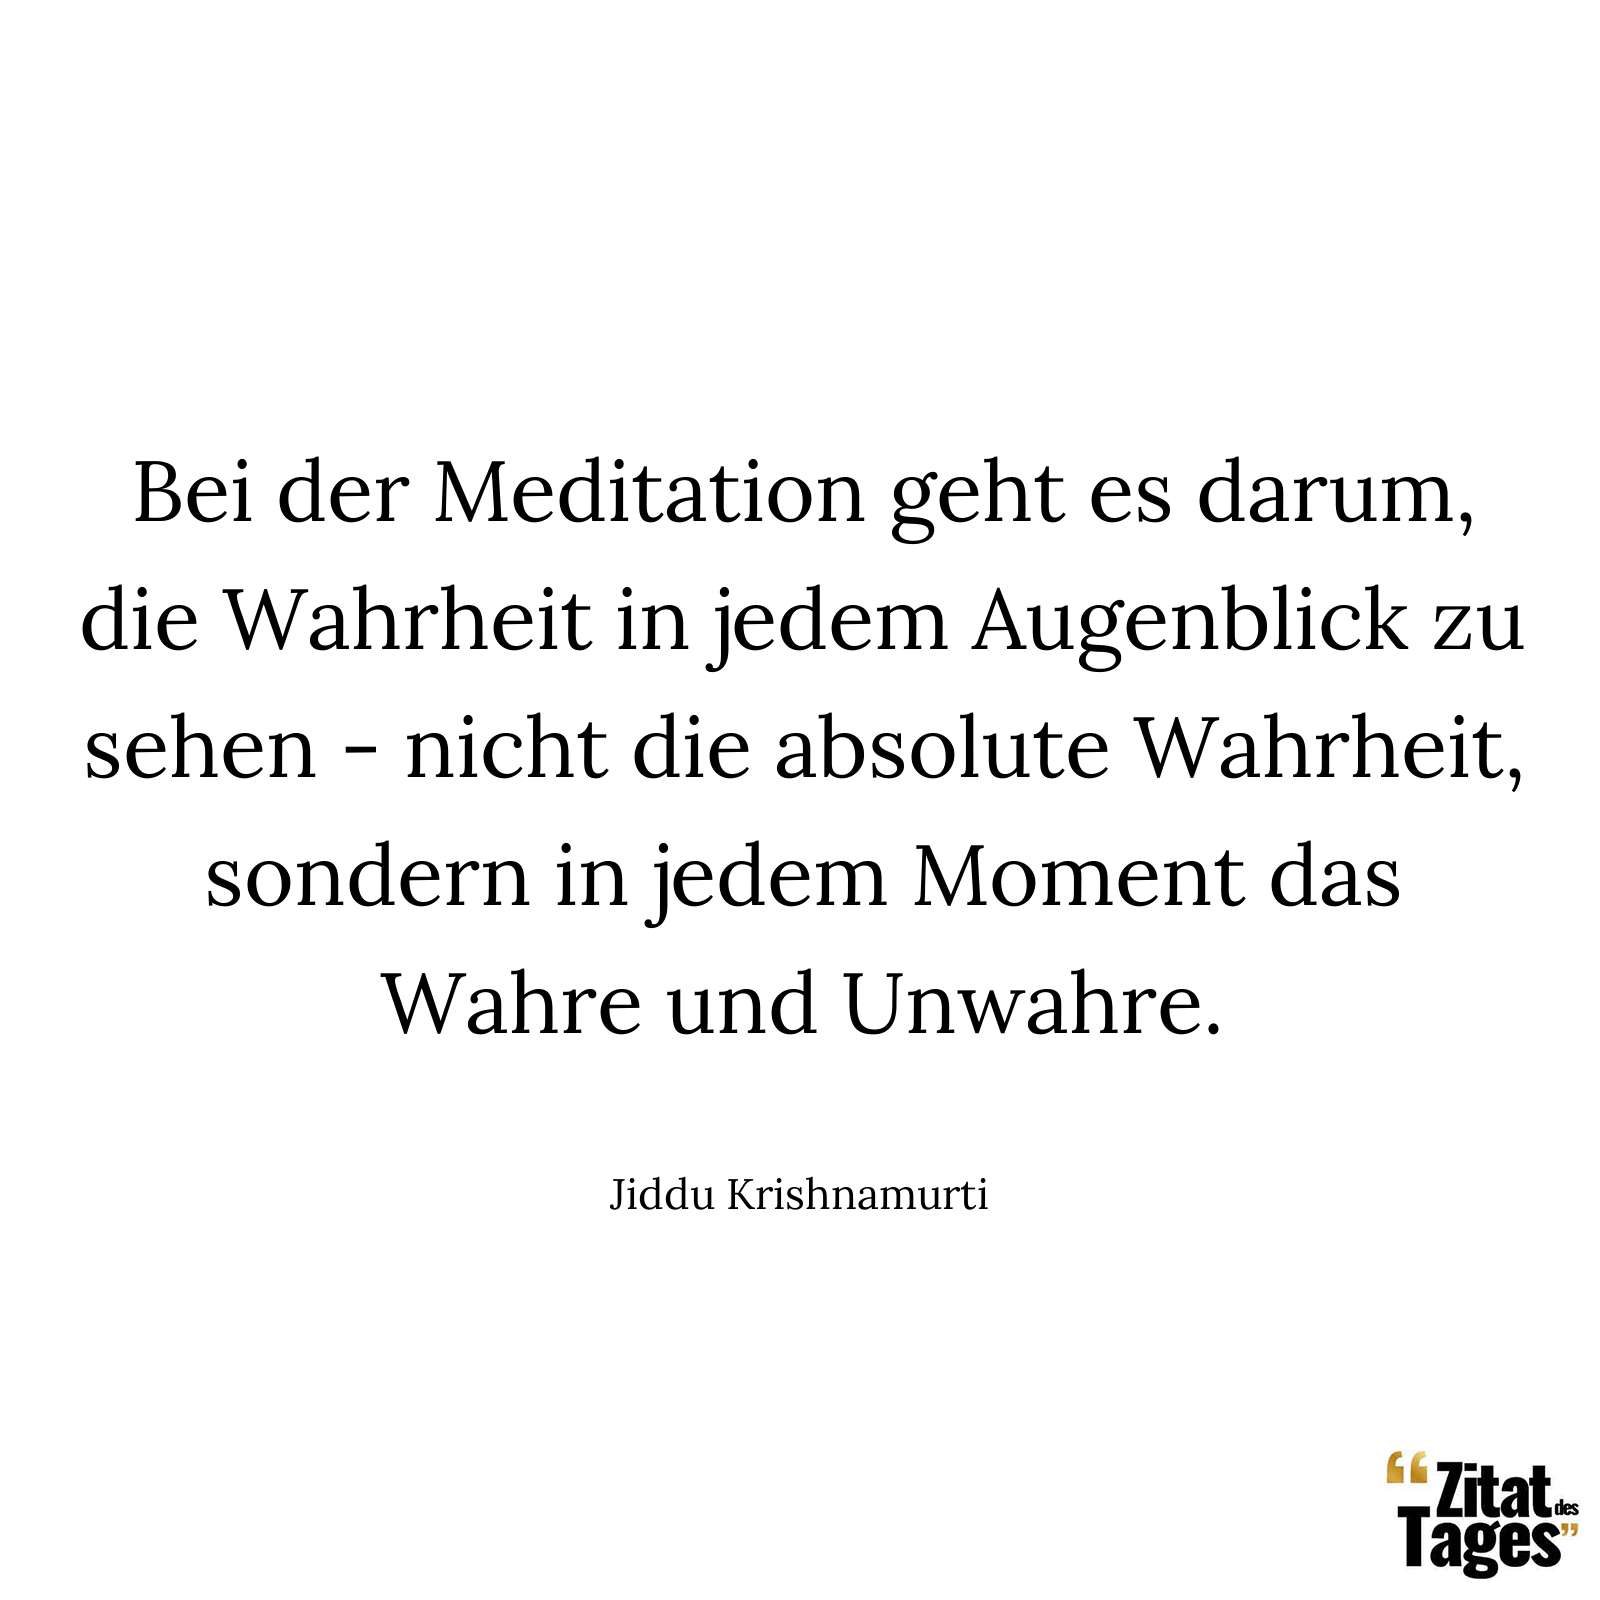 Bei der Meditation geht es darum, die Wahrheit in jedem Augenblick zu sehen - nicht die absolute Wahrheit, sondern in jedem Moment das Wahre und Unwahre. - Jiddu Krishnamurti